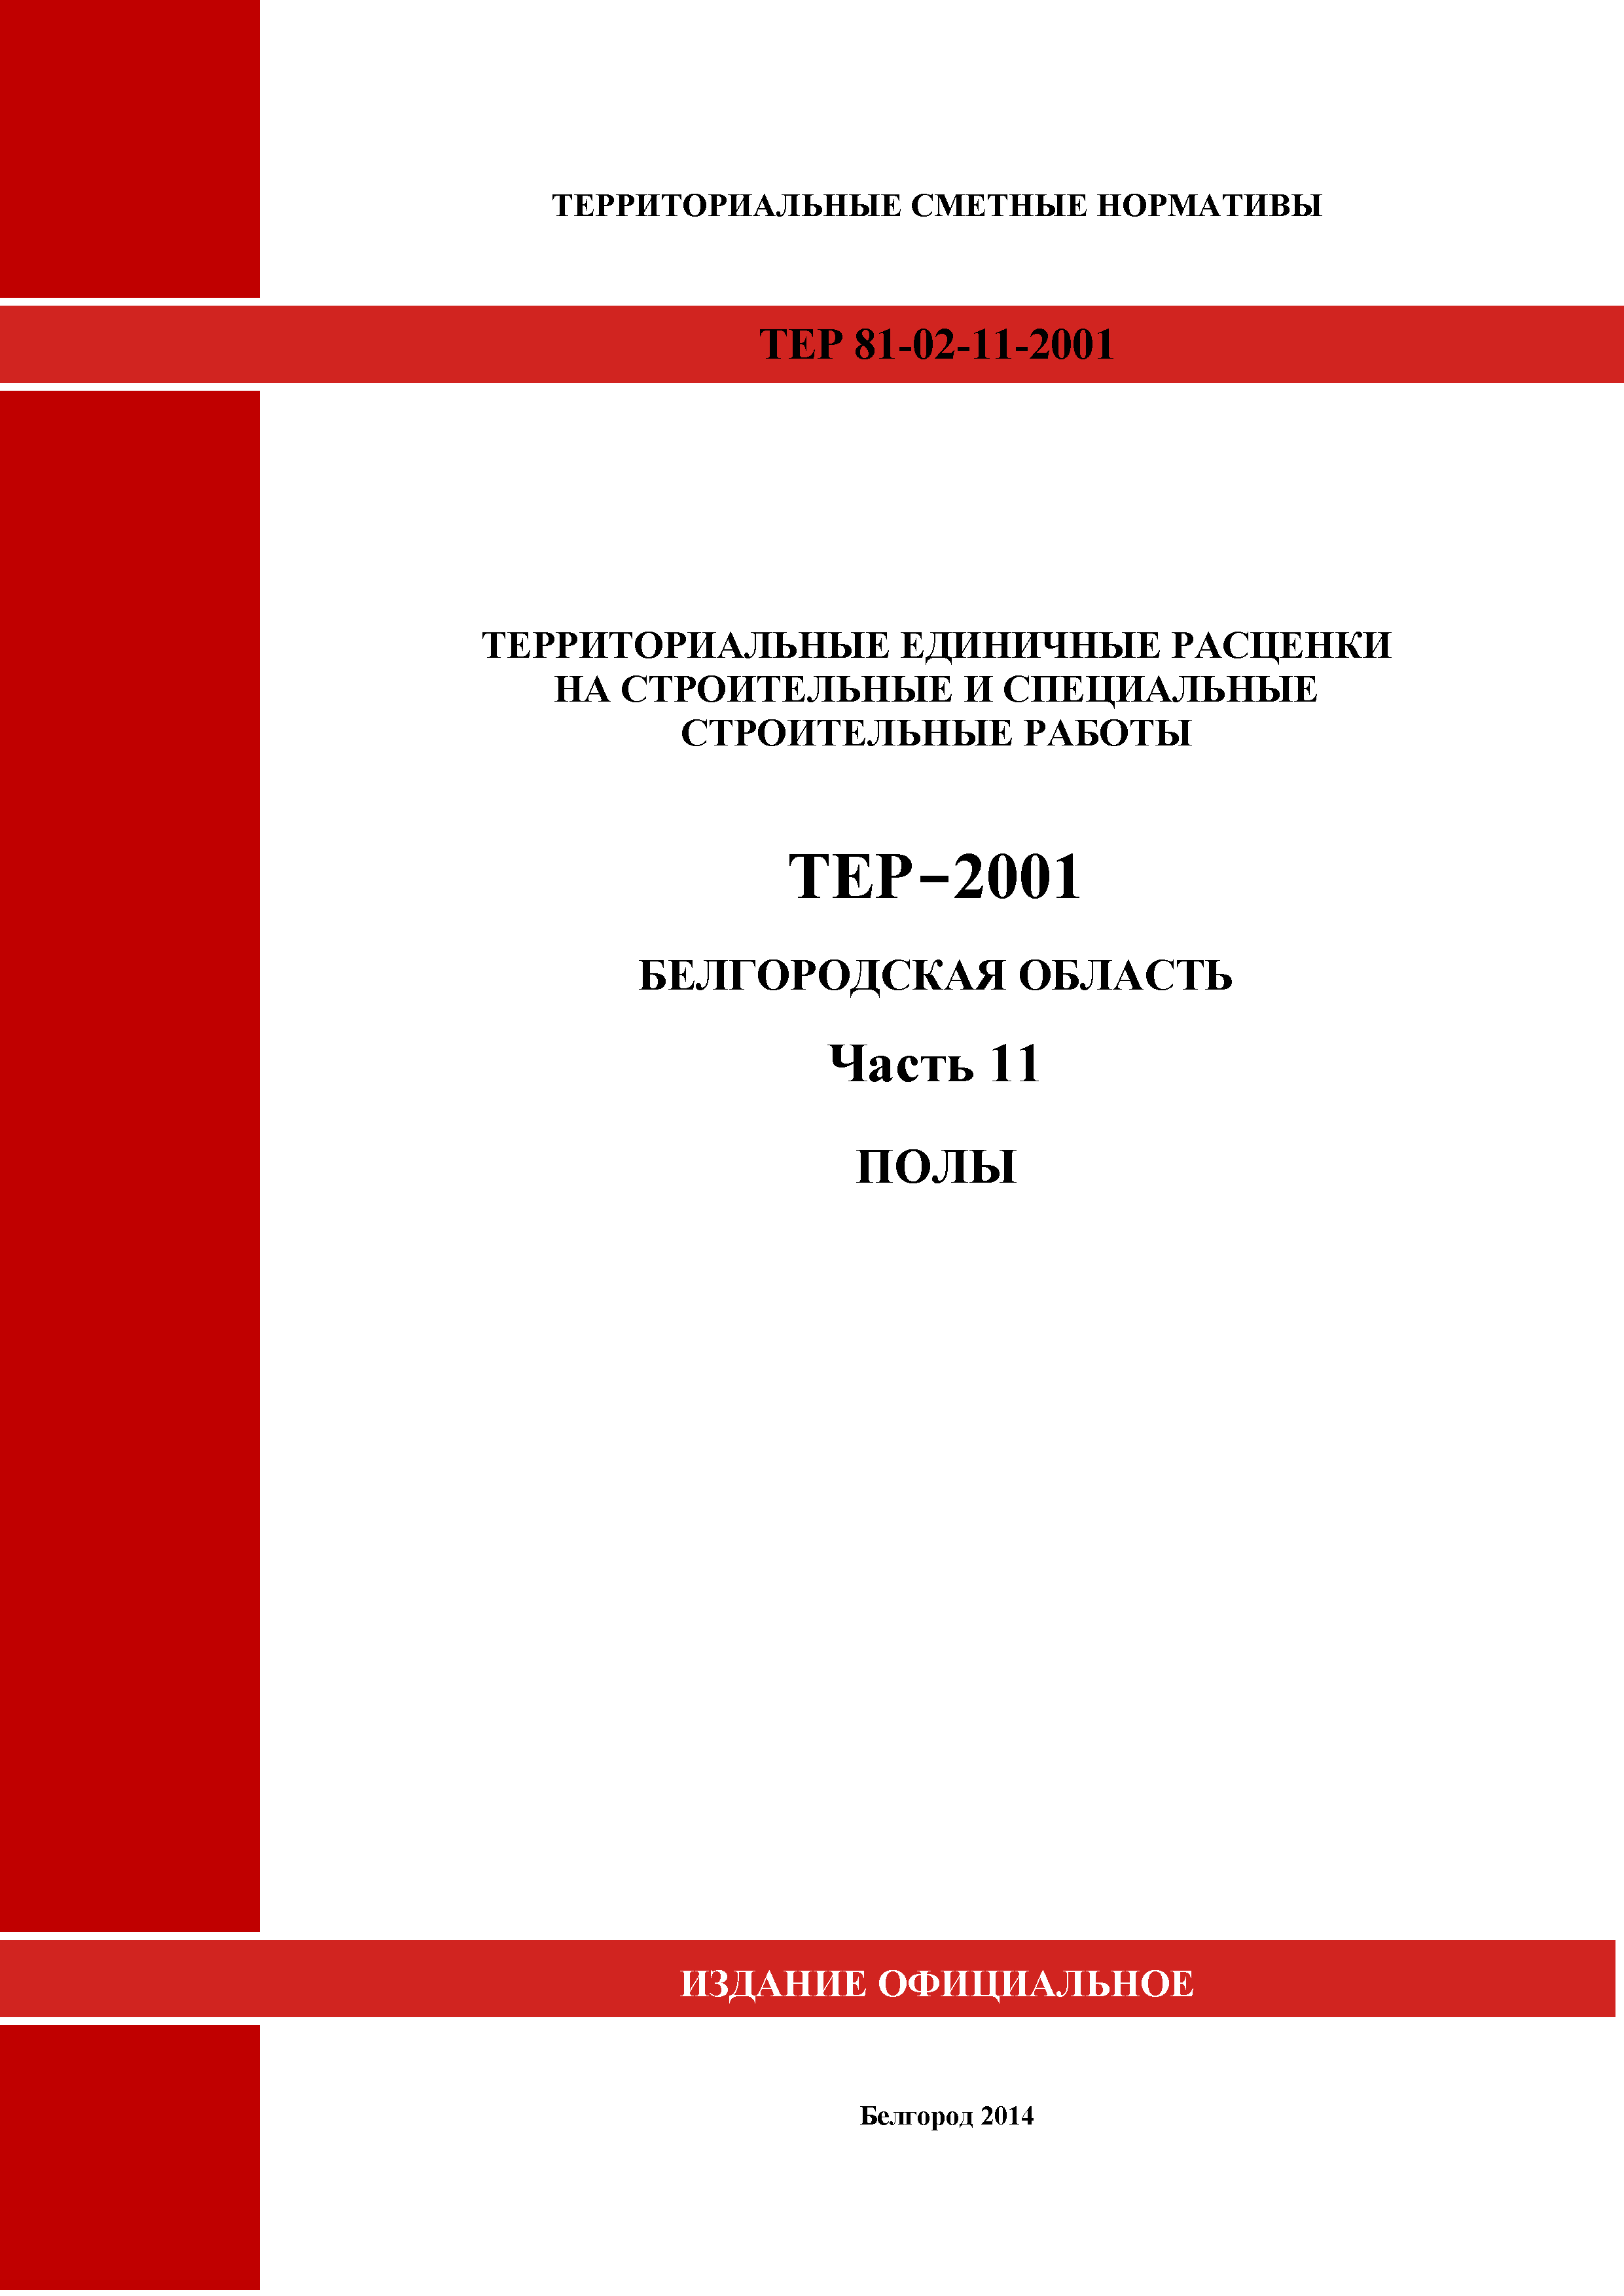 ТЕР Белгородская область 81-02-11-2001